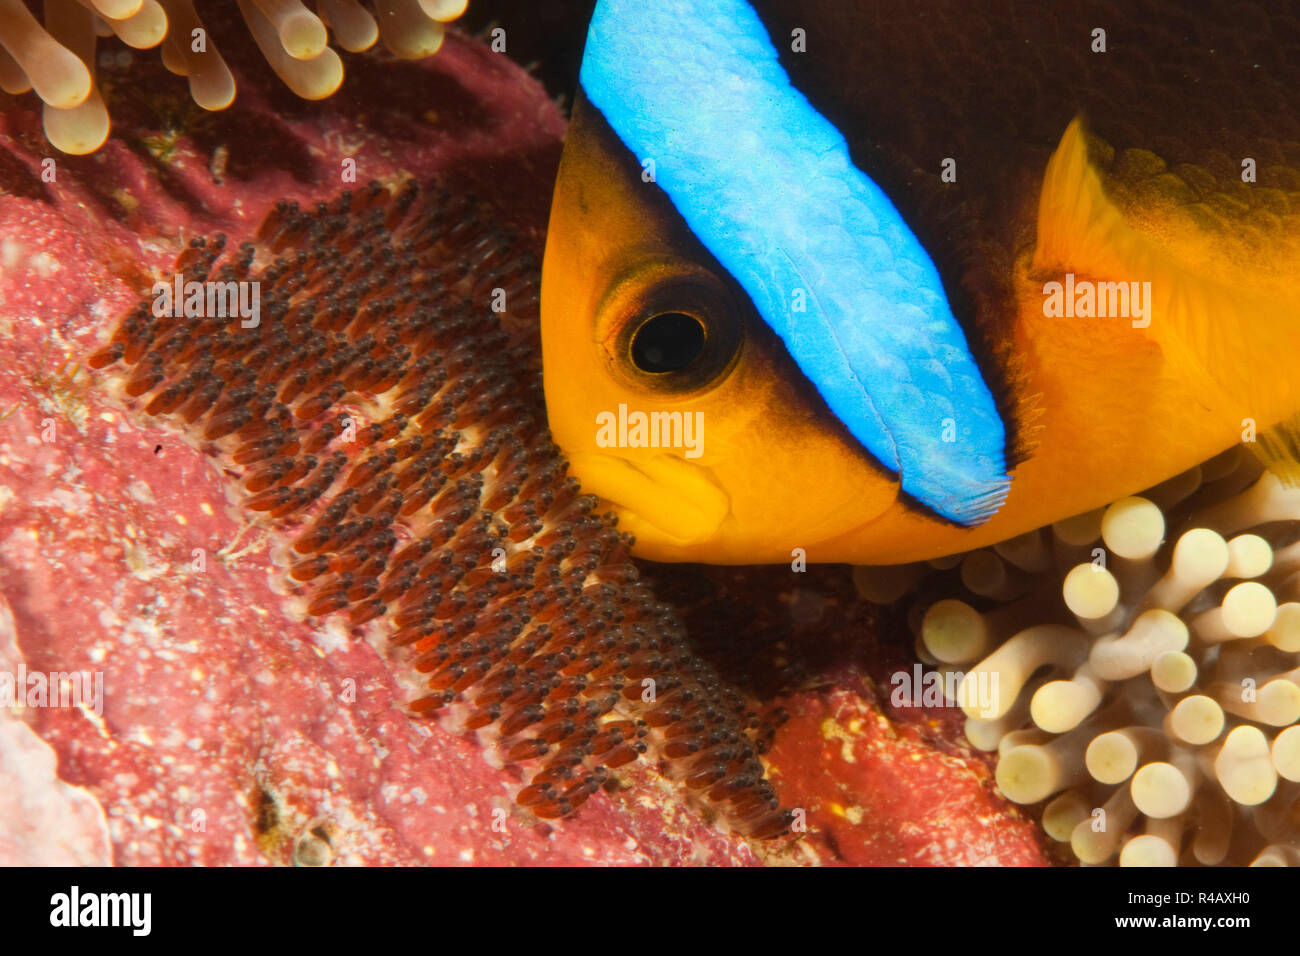 Clark pesce di anemone, prendendo cura delle sue uova, pacifico, Yap, FSM, Stati Federati di Micronesia, Oceania (Amphiprion clarkii) Foto Stock